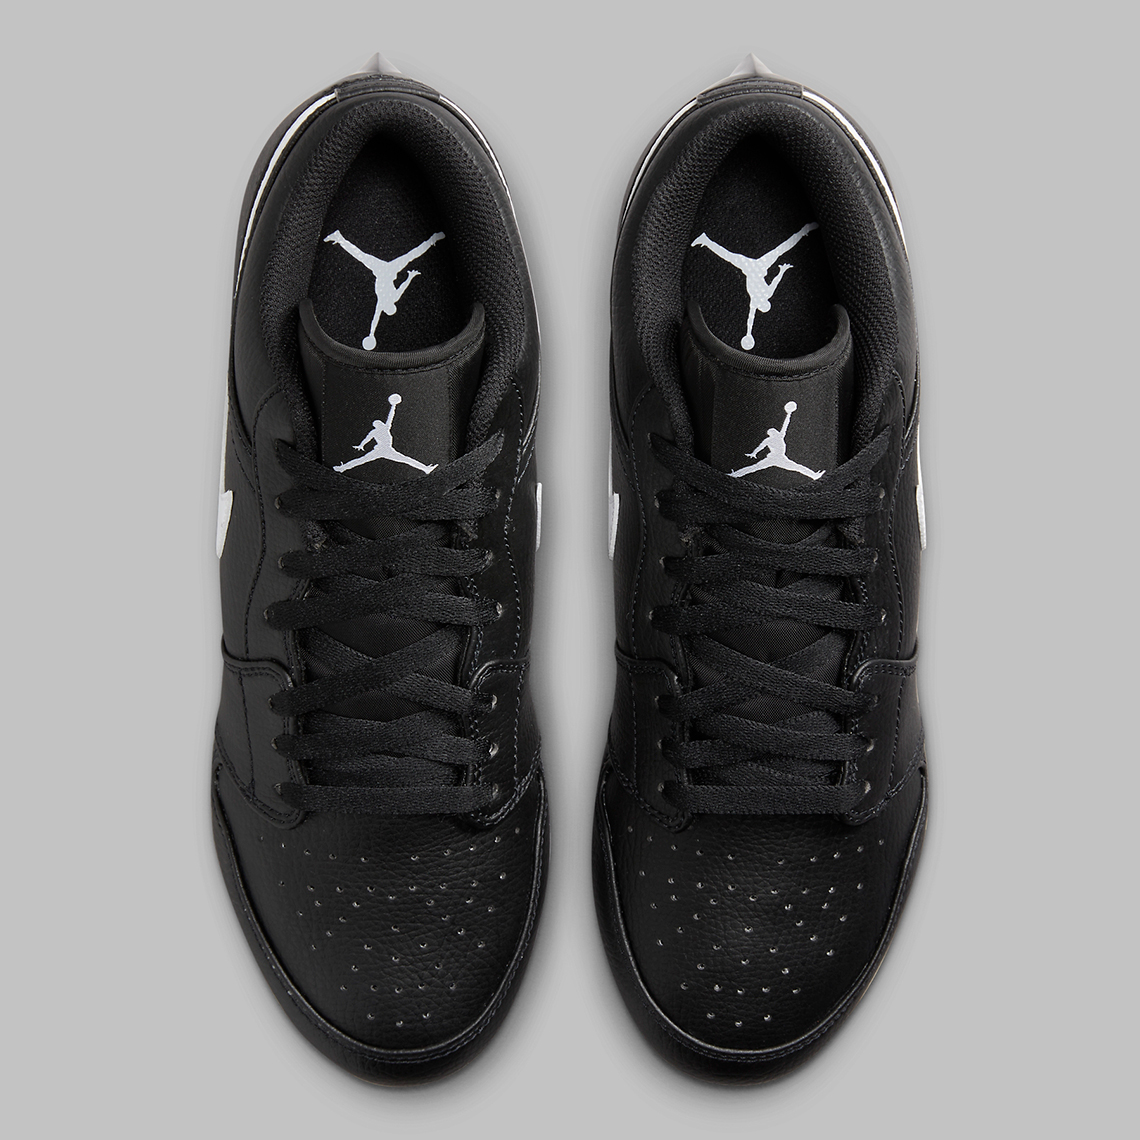 Fabolous Supreme x Air Jordan 5 Camo x Amare Stoudemire Nike Cortez Cleats Black White Fj6245 001 1